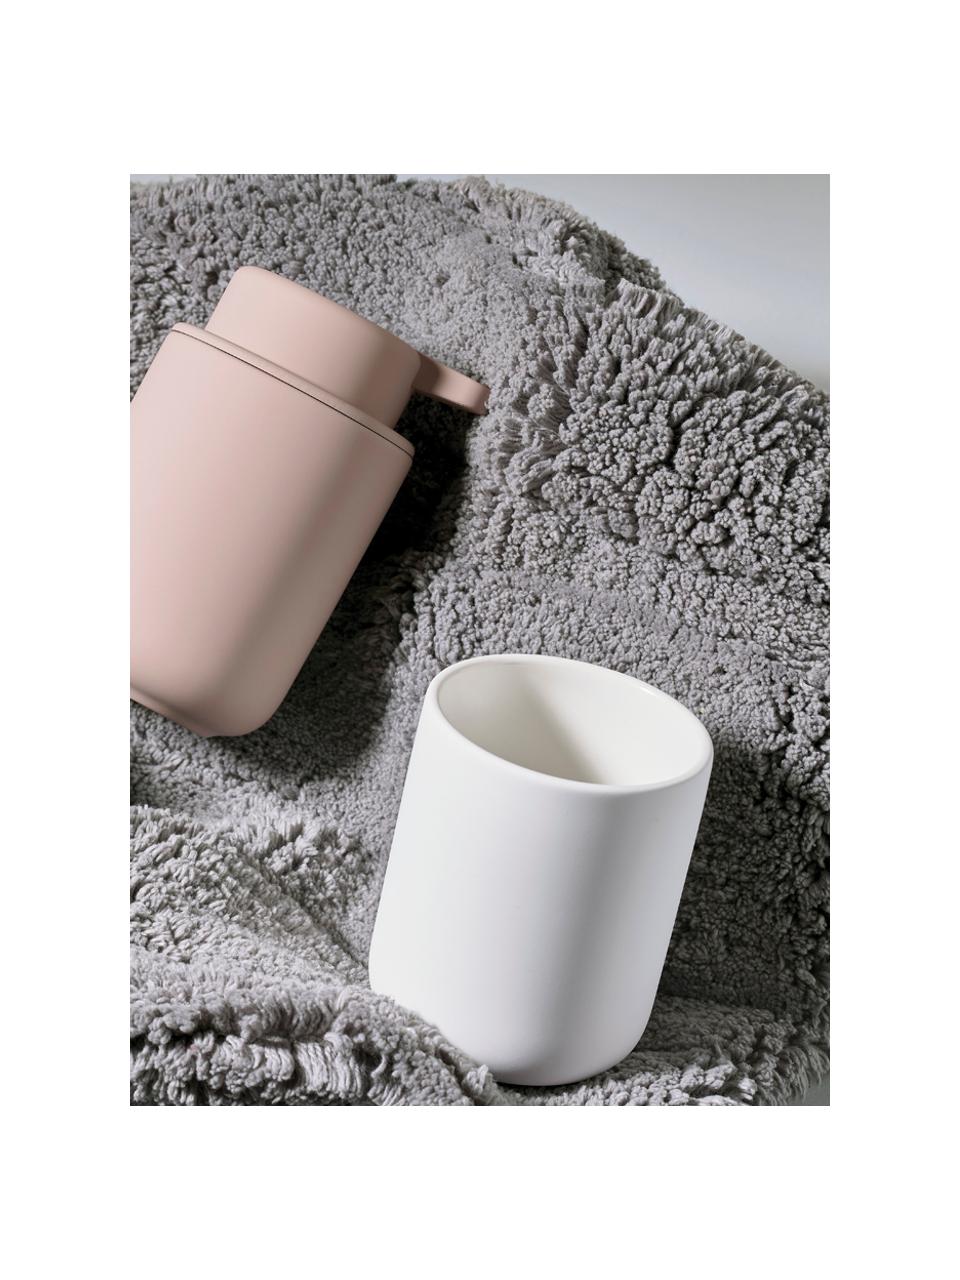 Kubek na szczoteczki z kamionki Ume, Ceramika pokryta miękką w dotyku powłoką (tworzywo sztuczne), Biały, Ø 8 x W 10 cm